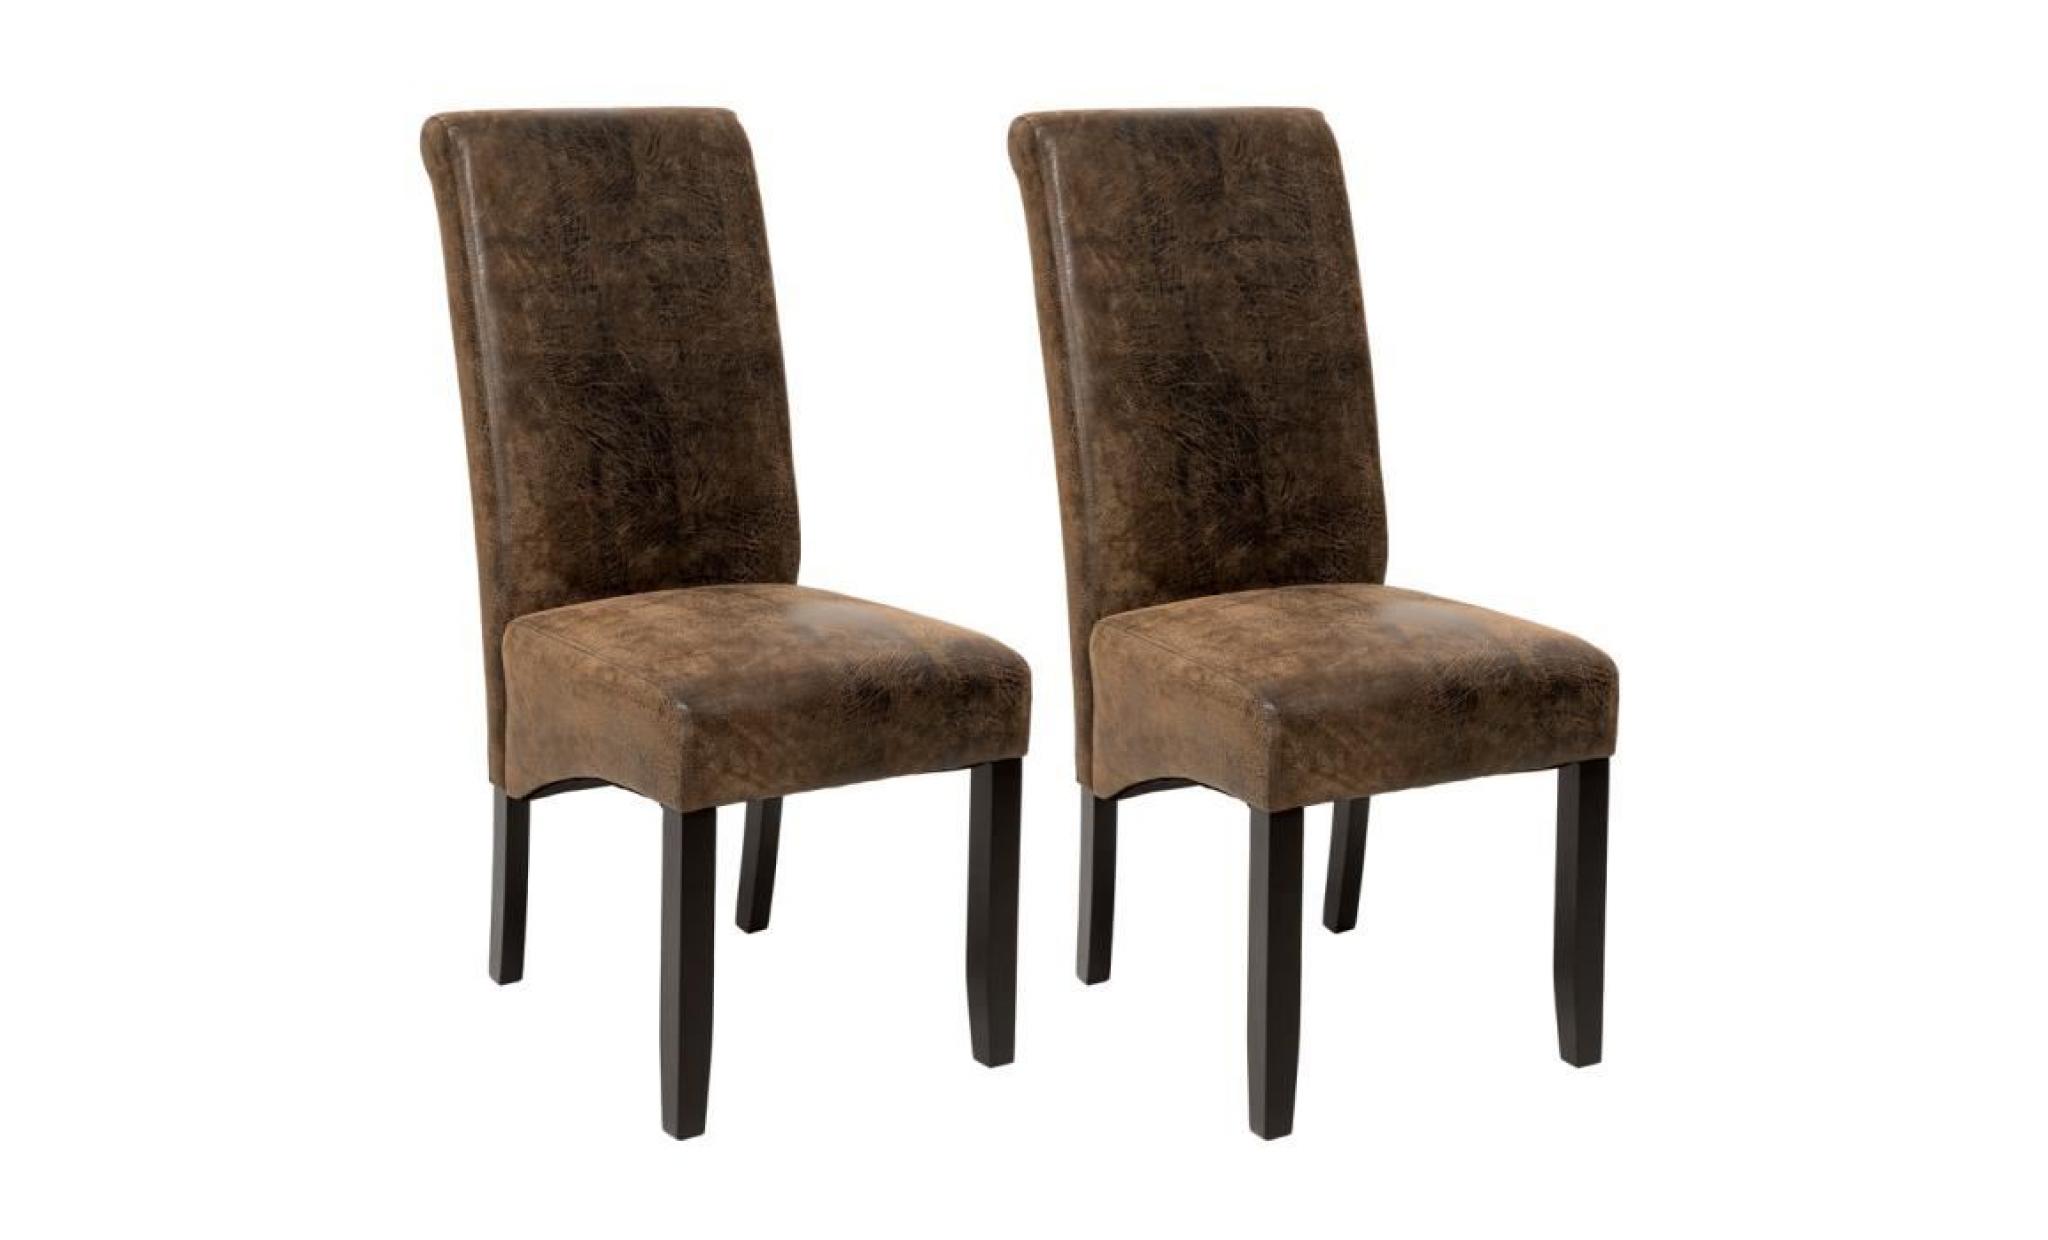 2 Chaises de salle à manger design 105 cm Marron Aspect Vieilli / Daim, Chaises de Salon, Meuble de salon, Mobilier de Salon TECTAKE